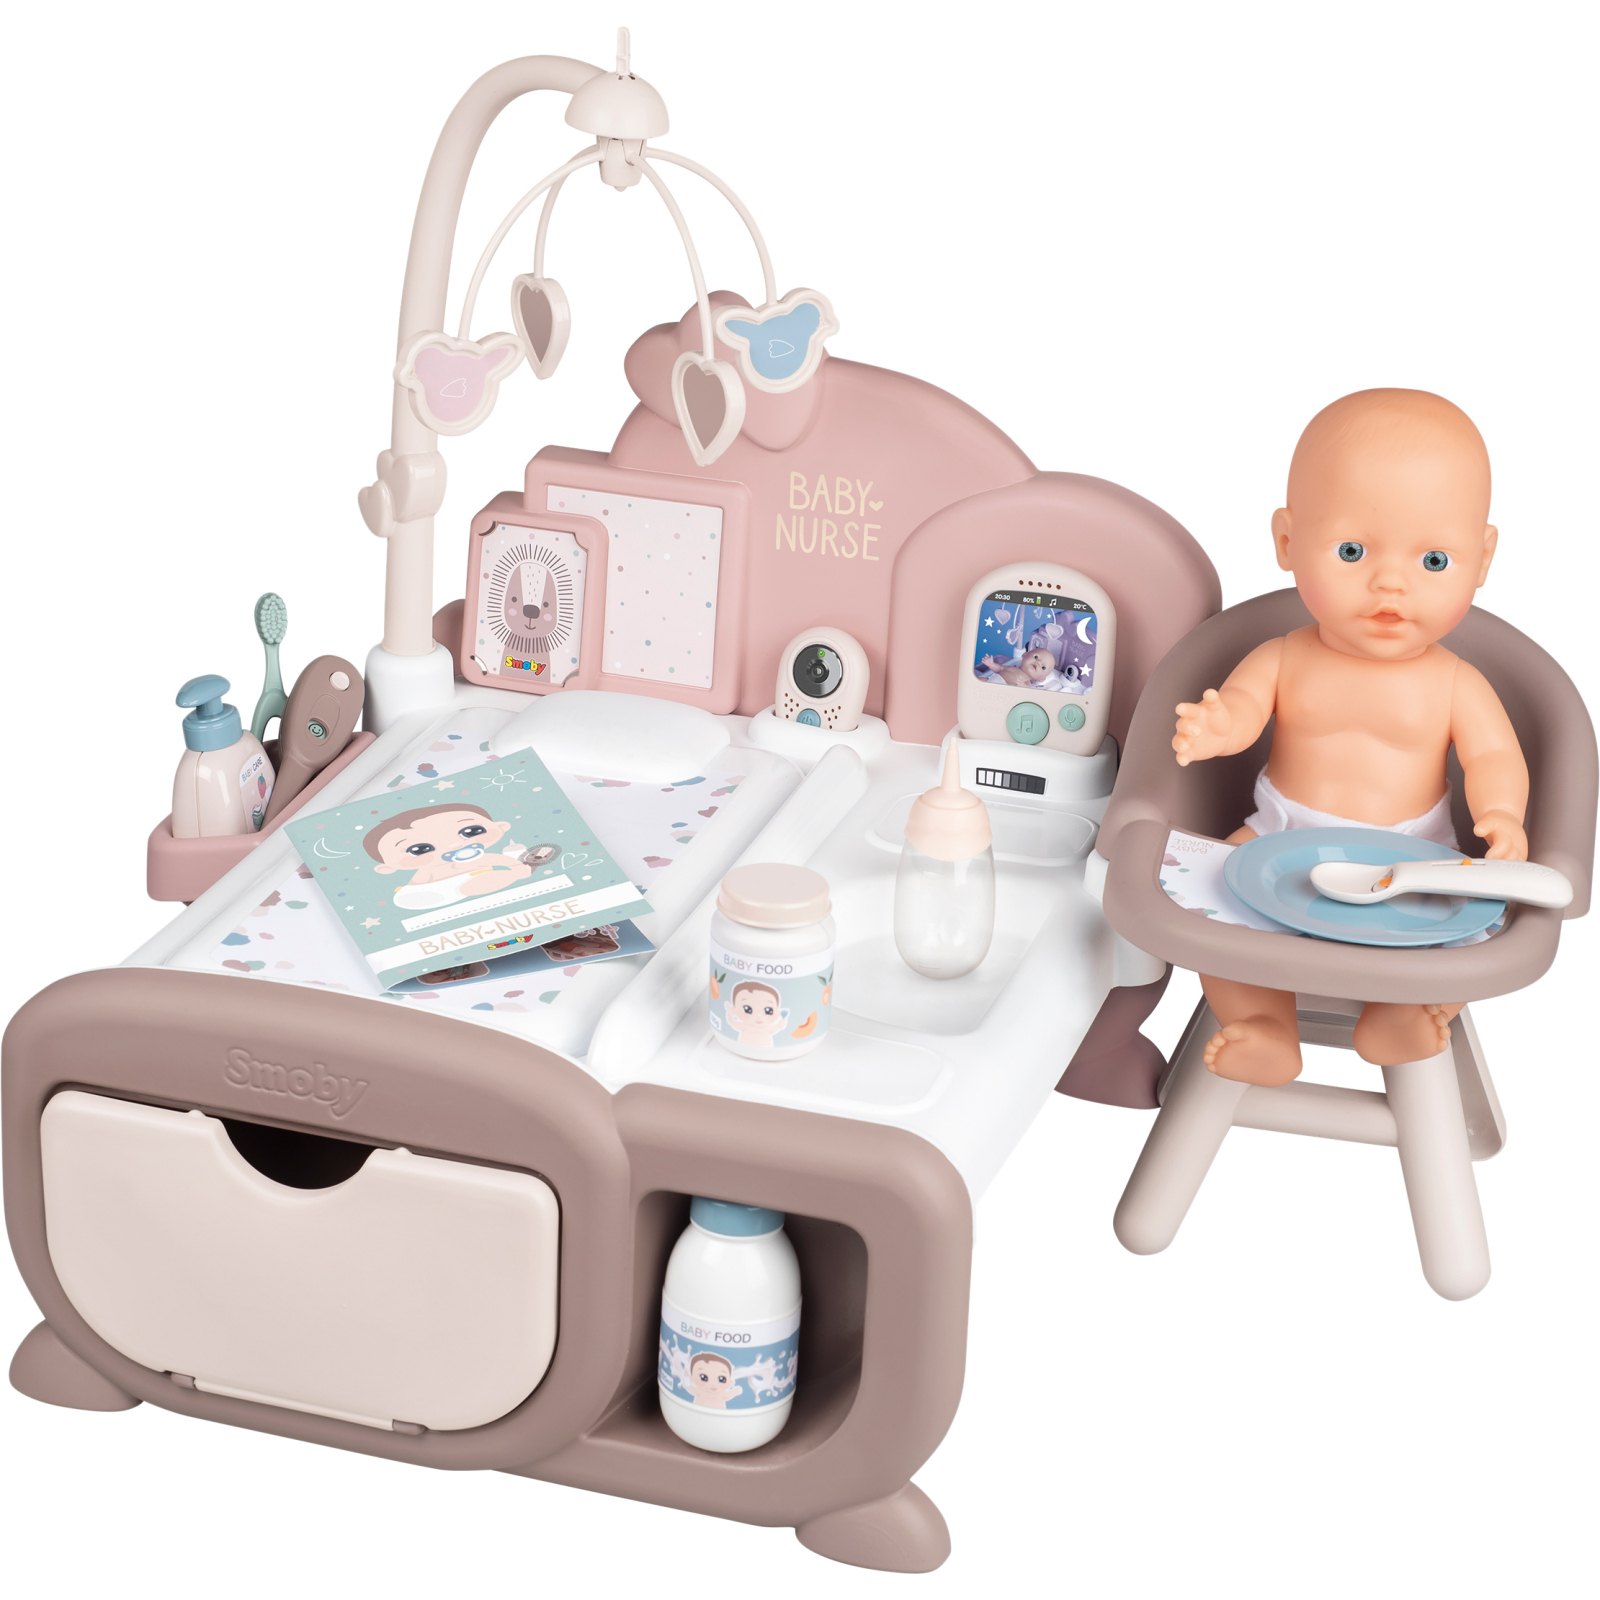 Игровой набор Smoby Toys Baby Nurse Комната малыша с кухней, ванной, спальней и аксессуарами (220376) изображение 2